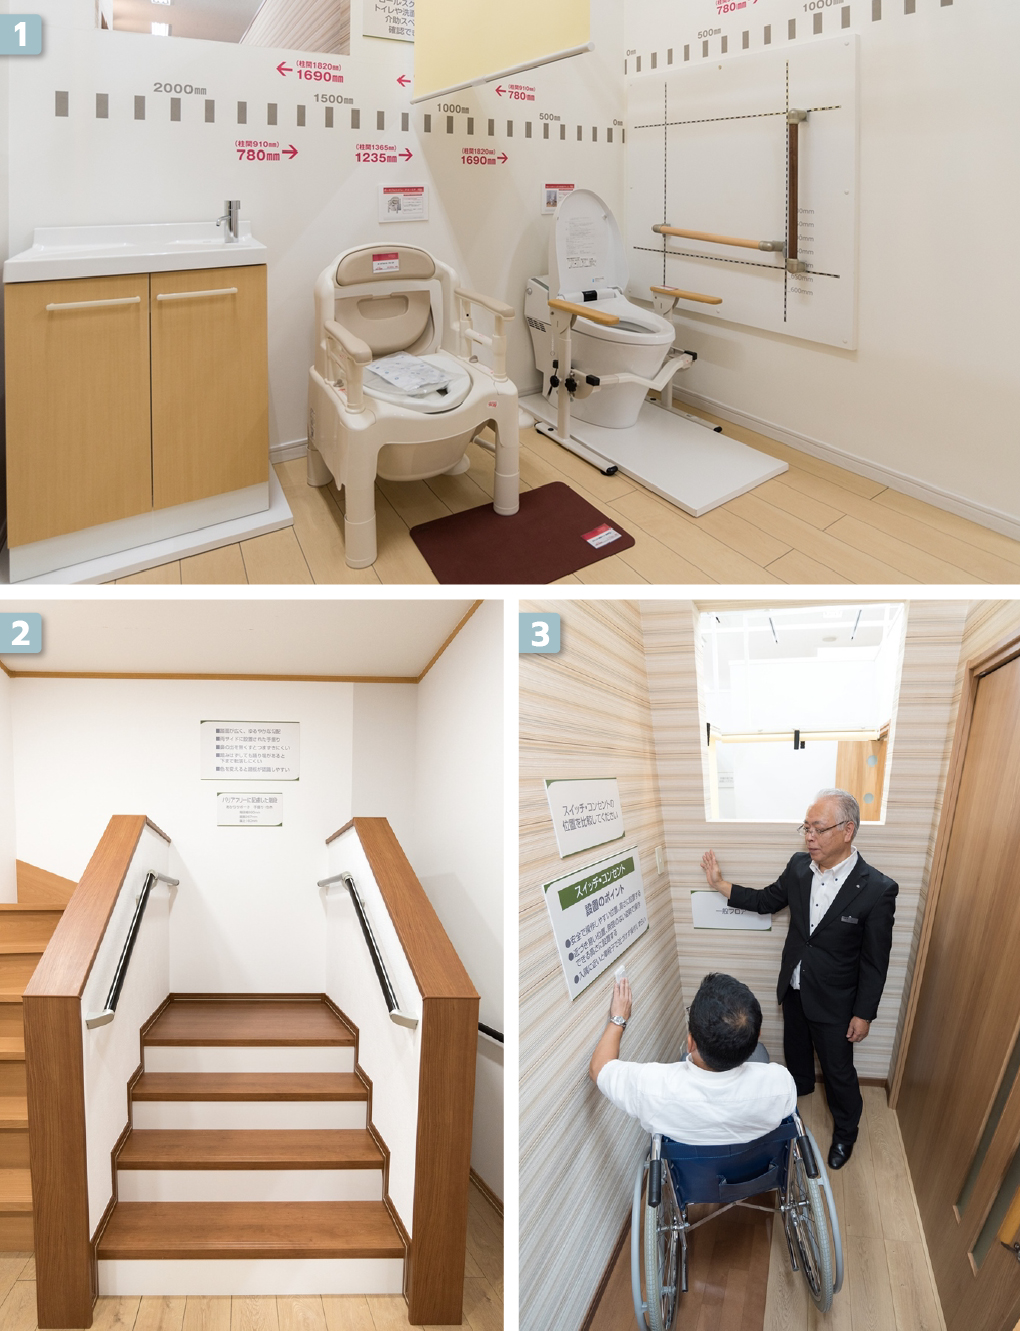 ห้องน้ำ บันได และอุปกรณ์ที่ปรับฟังก์ชันให้เหมาะสำหรับผู้สูงวัย